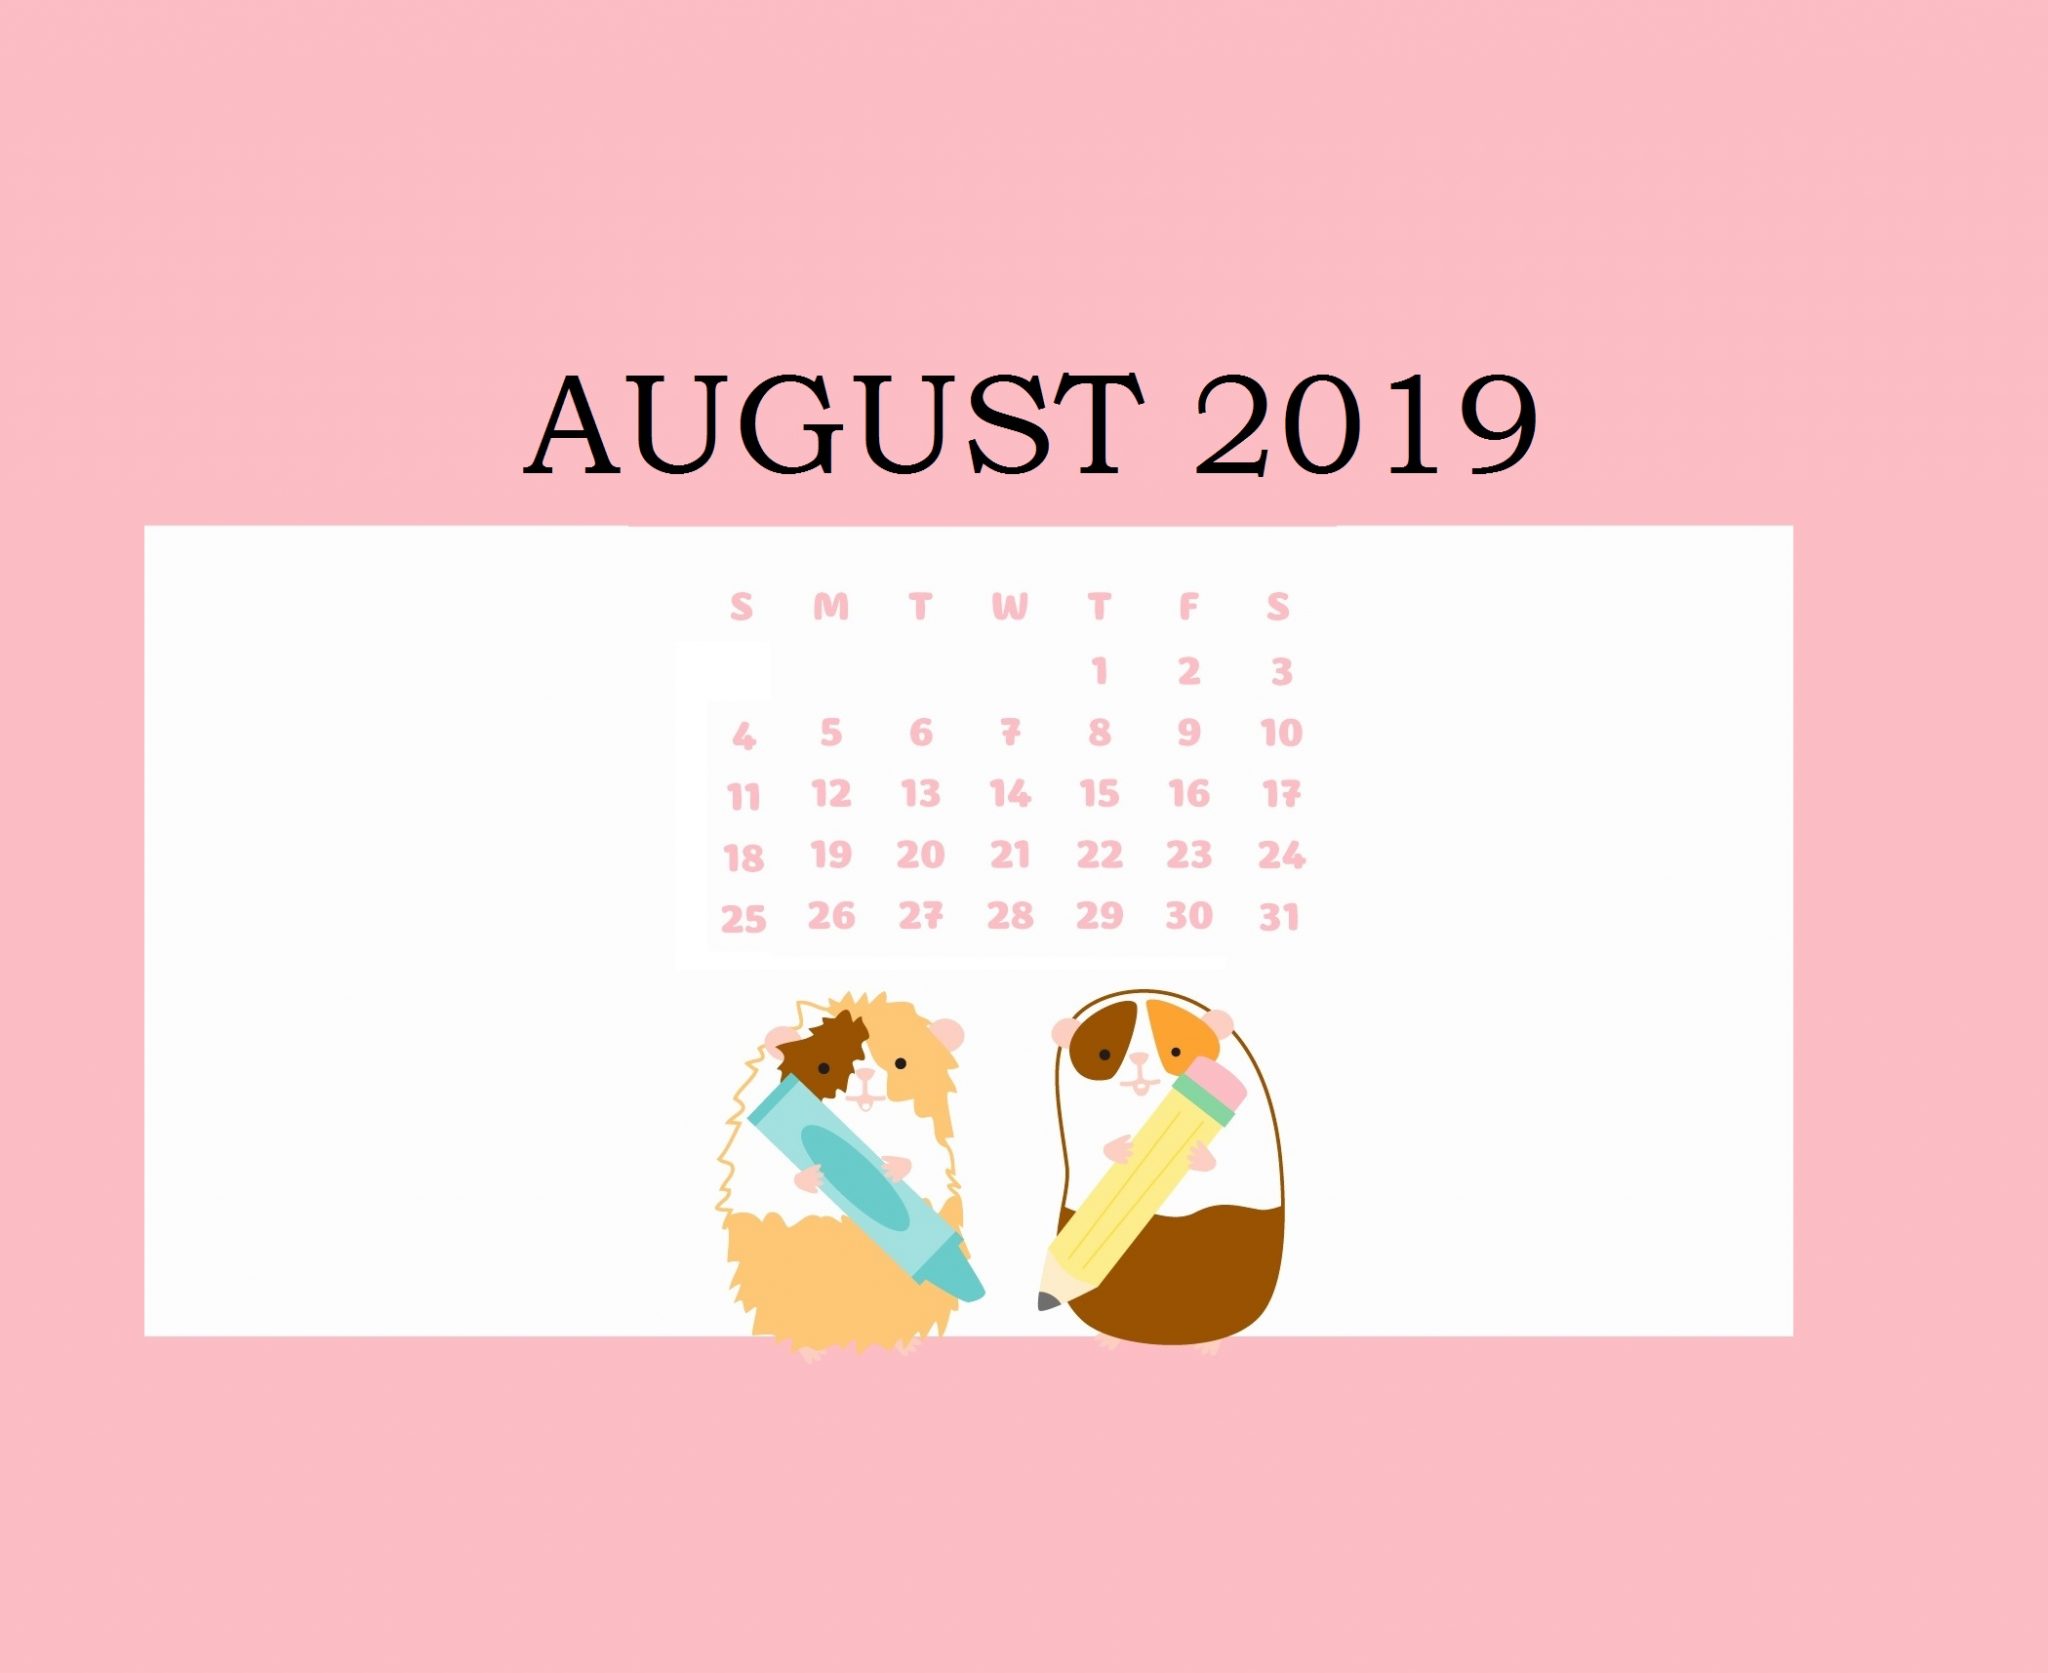 Free August 2019 Calendar Wallpaper